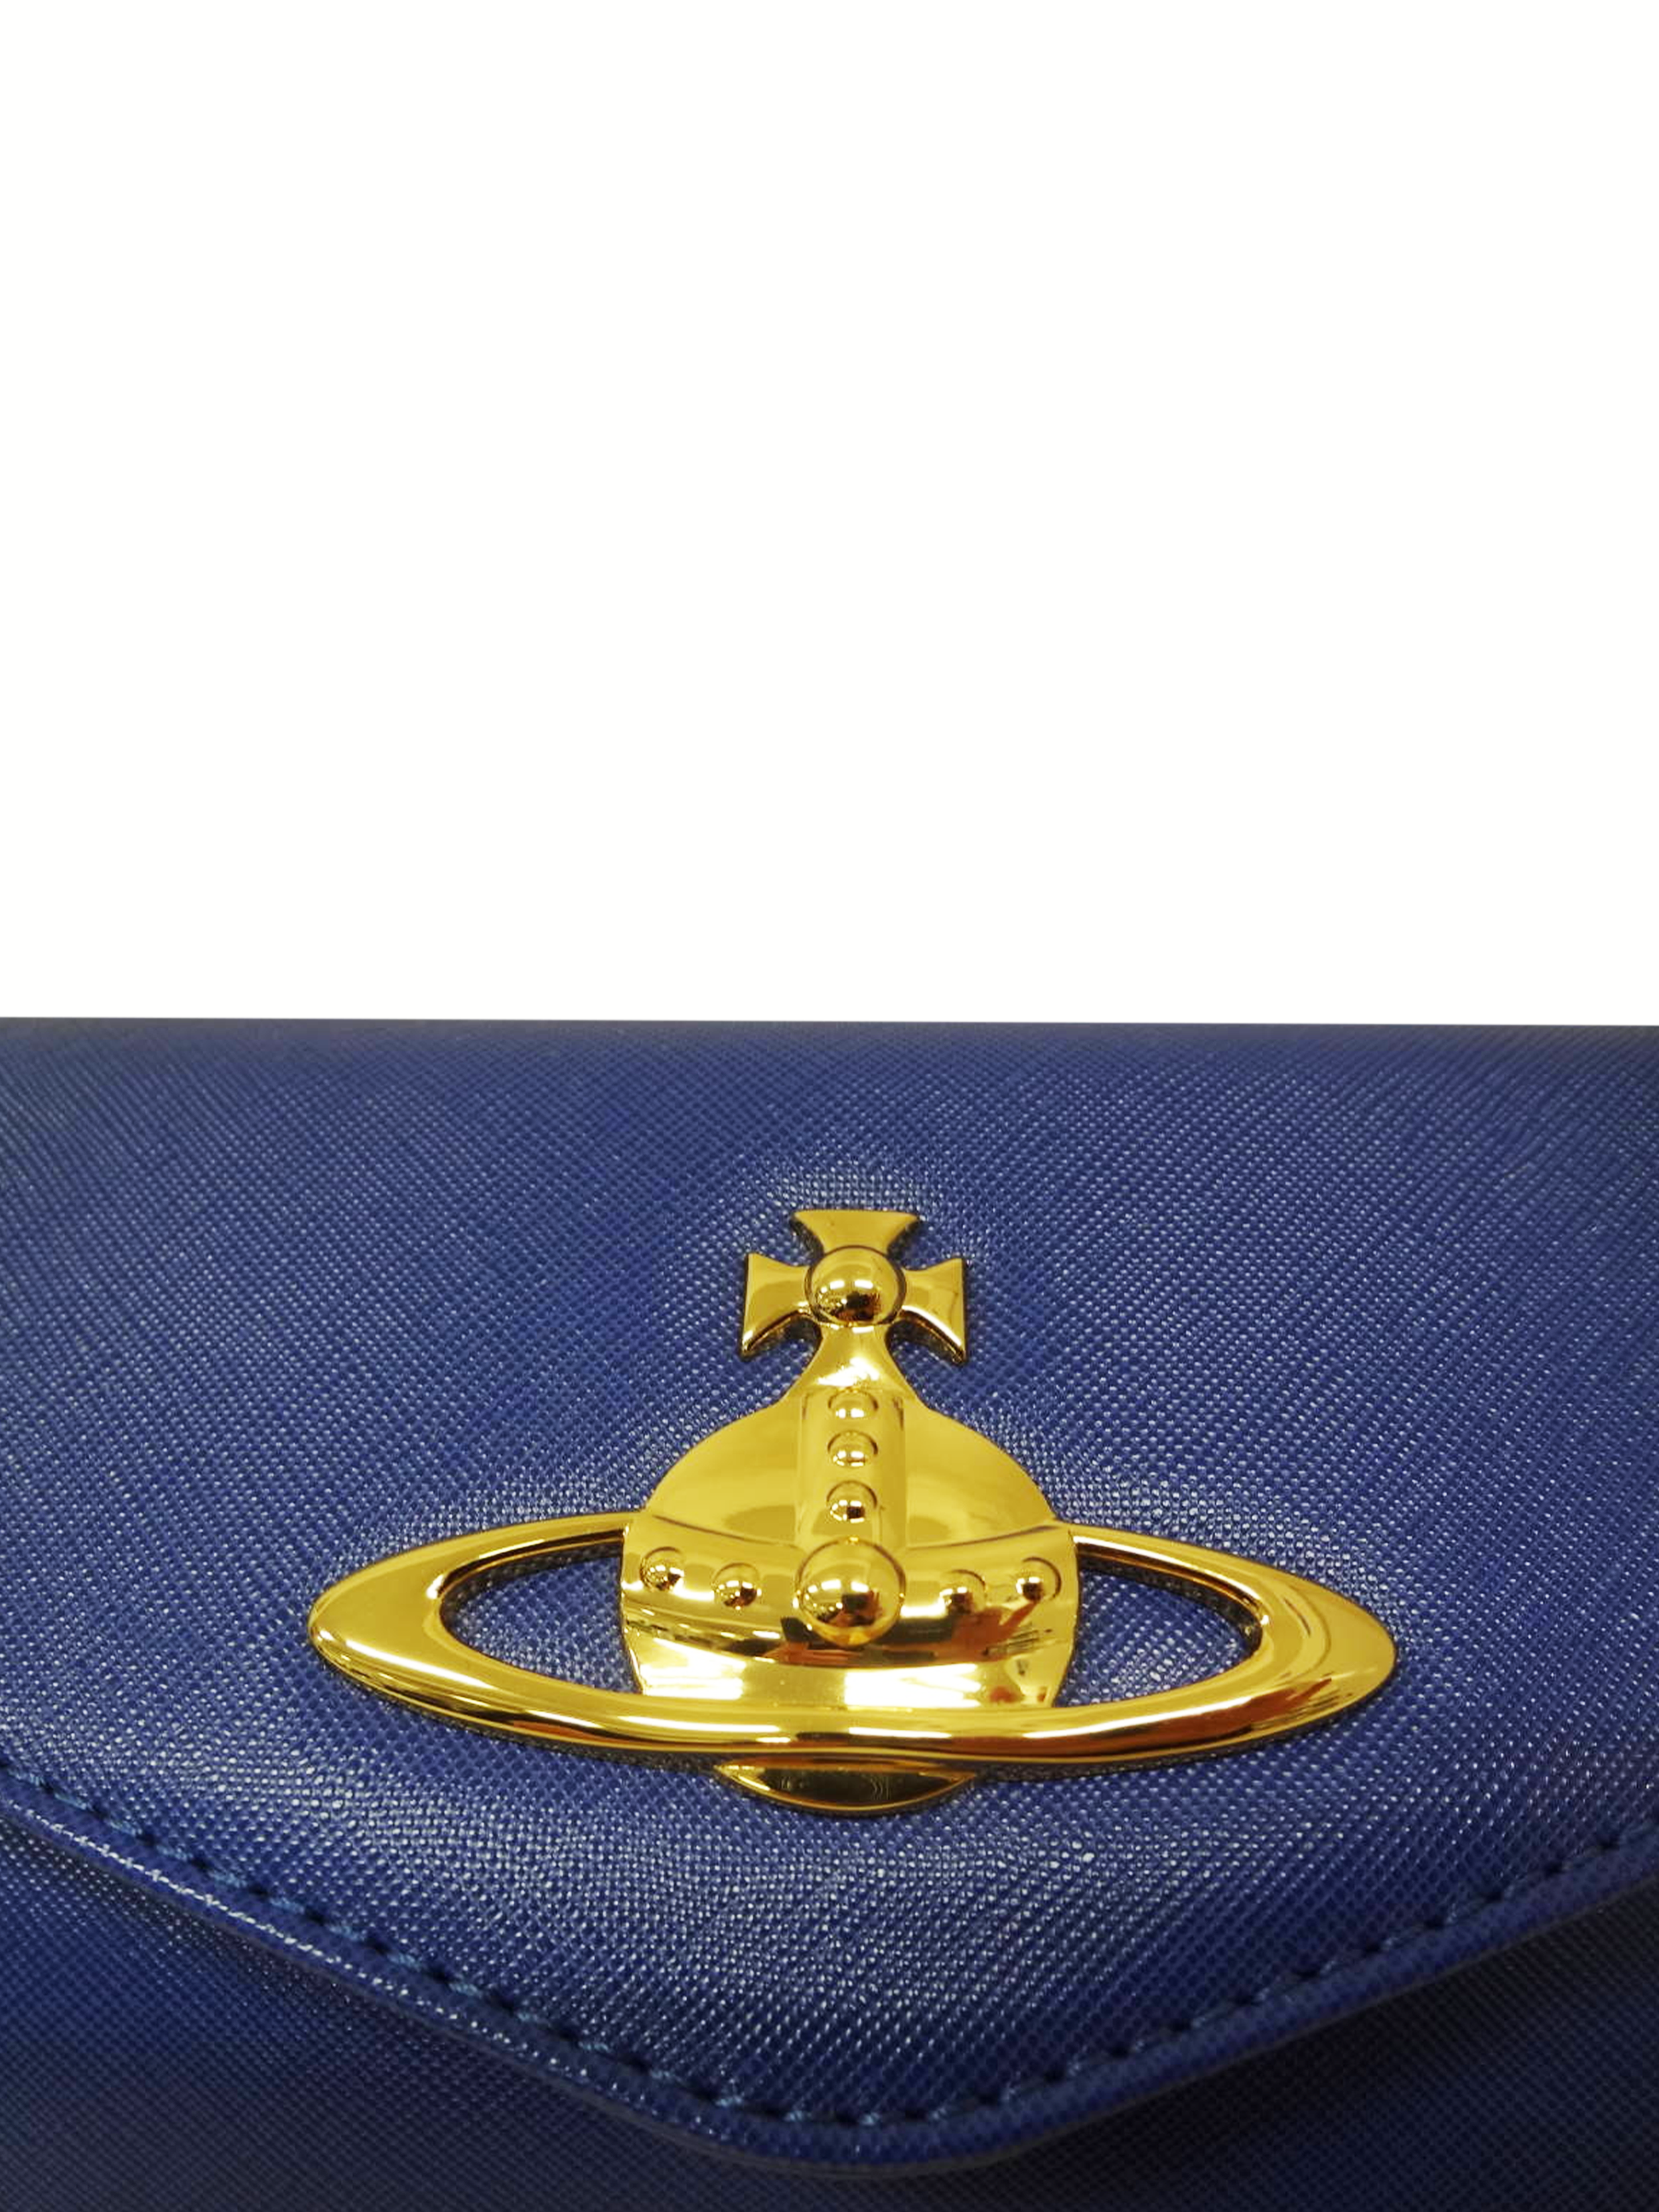 Vivienne Westwood 2000s Blue Leather Shoulder Bag